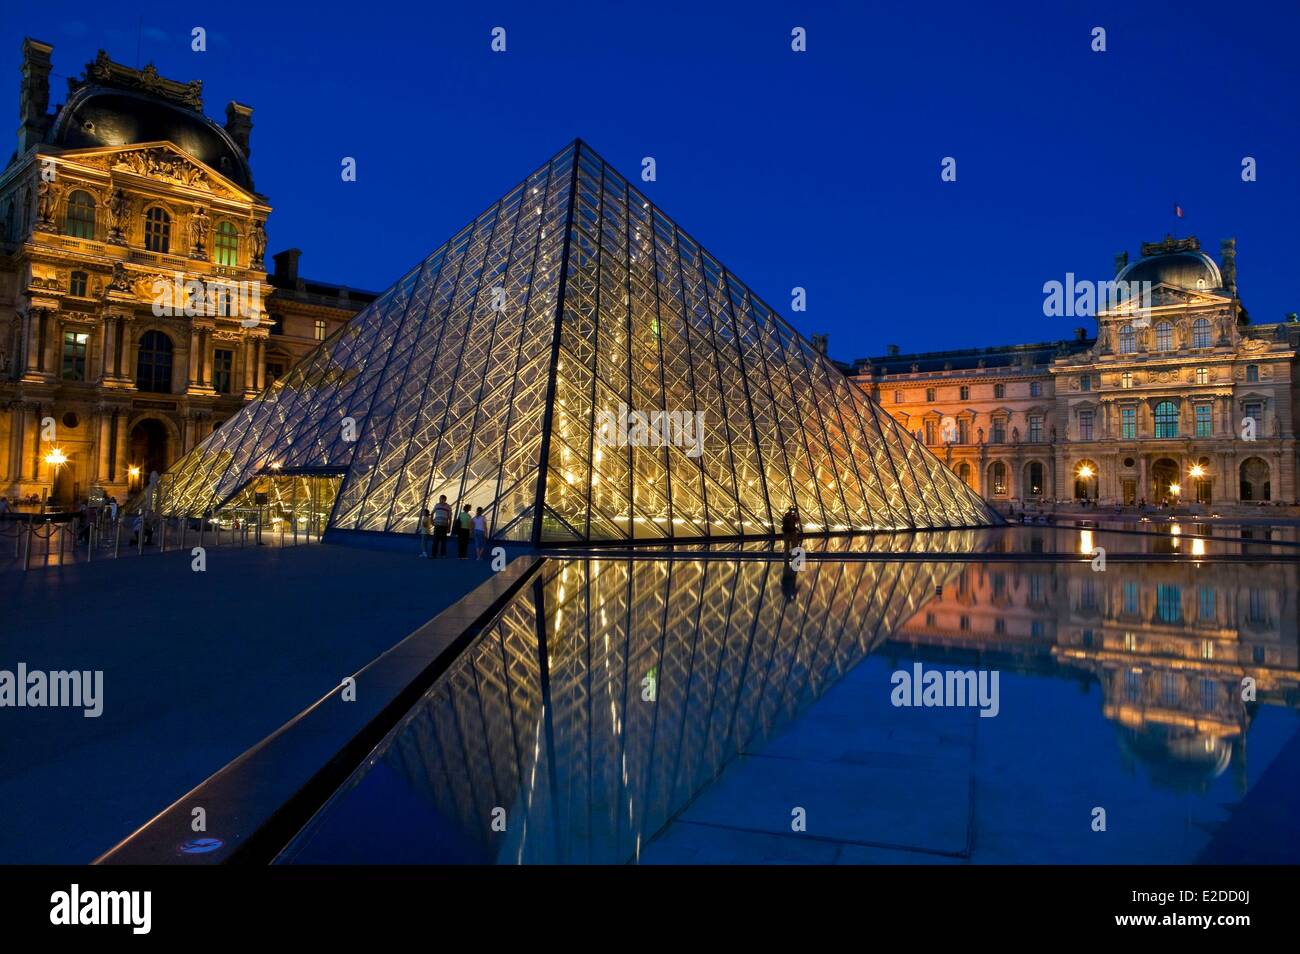 La Pirámide del Louvre de París en Francia por el arquitecto IM Pei y la fachada del Cour Napoleón Foto de stock